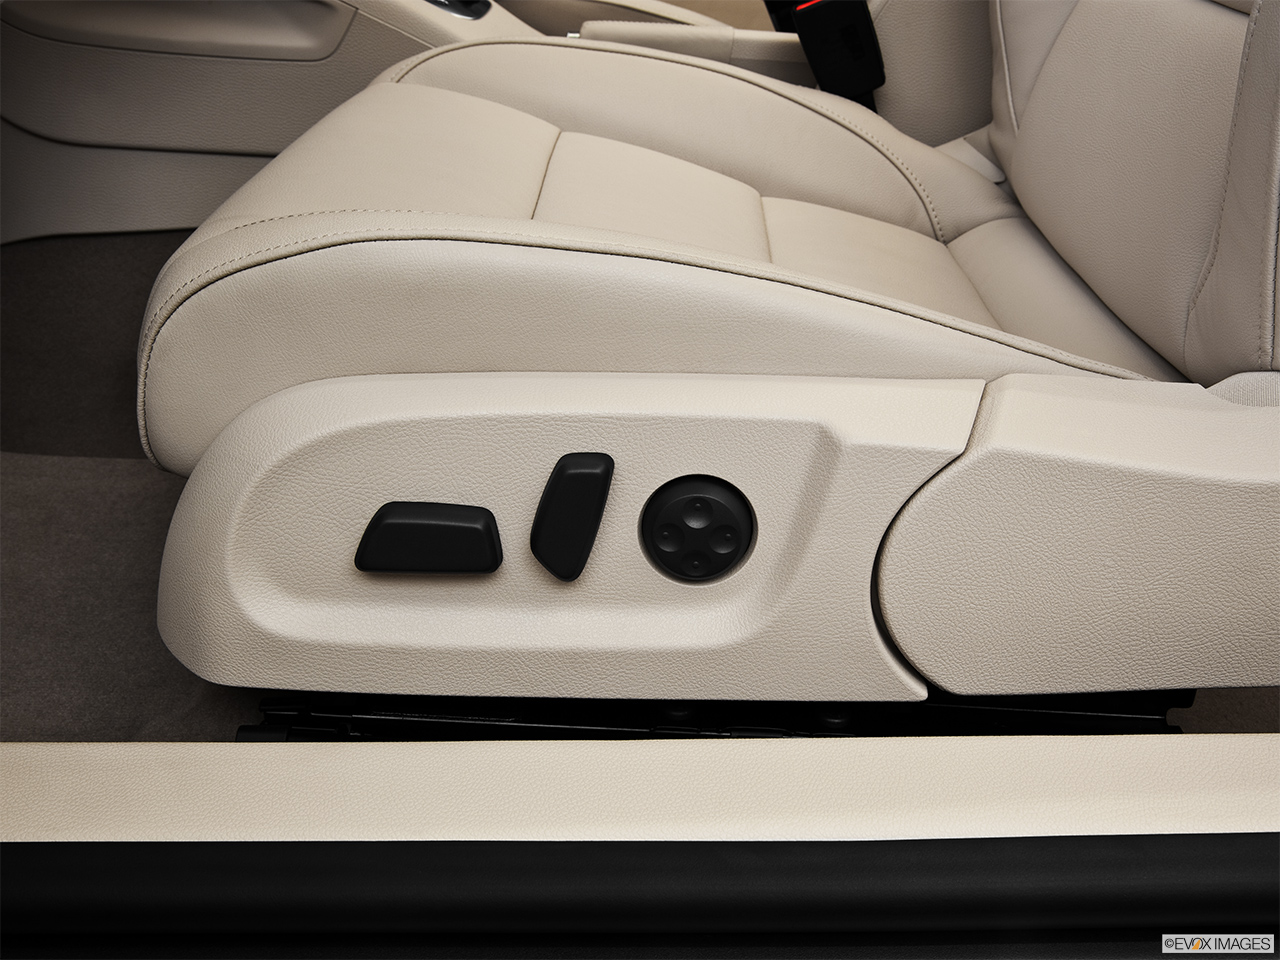 2013 Volkswagen Eos Lux Seat Adjustment Controllers. 